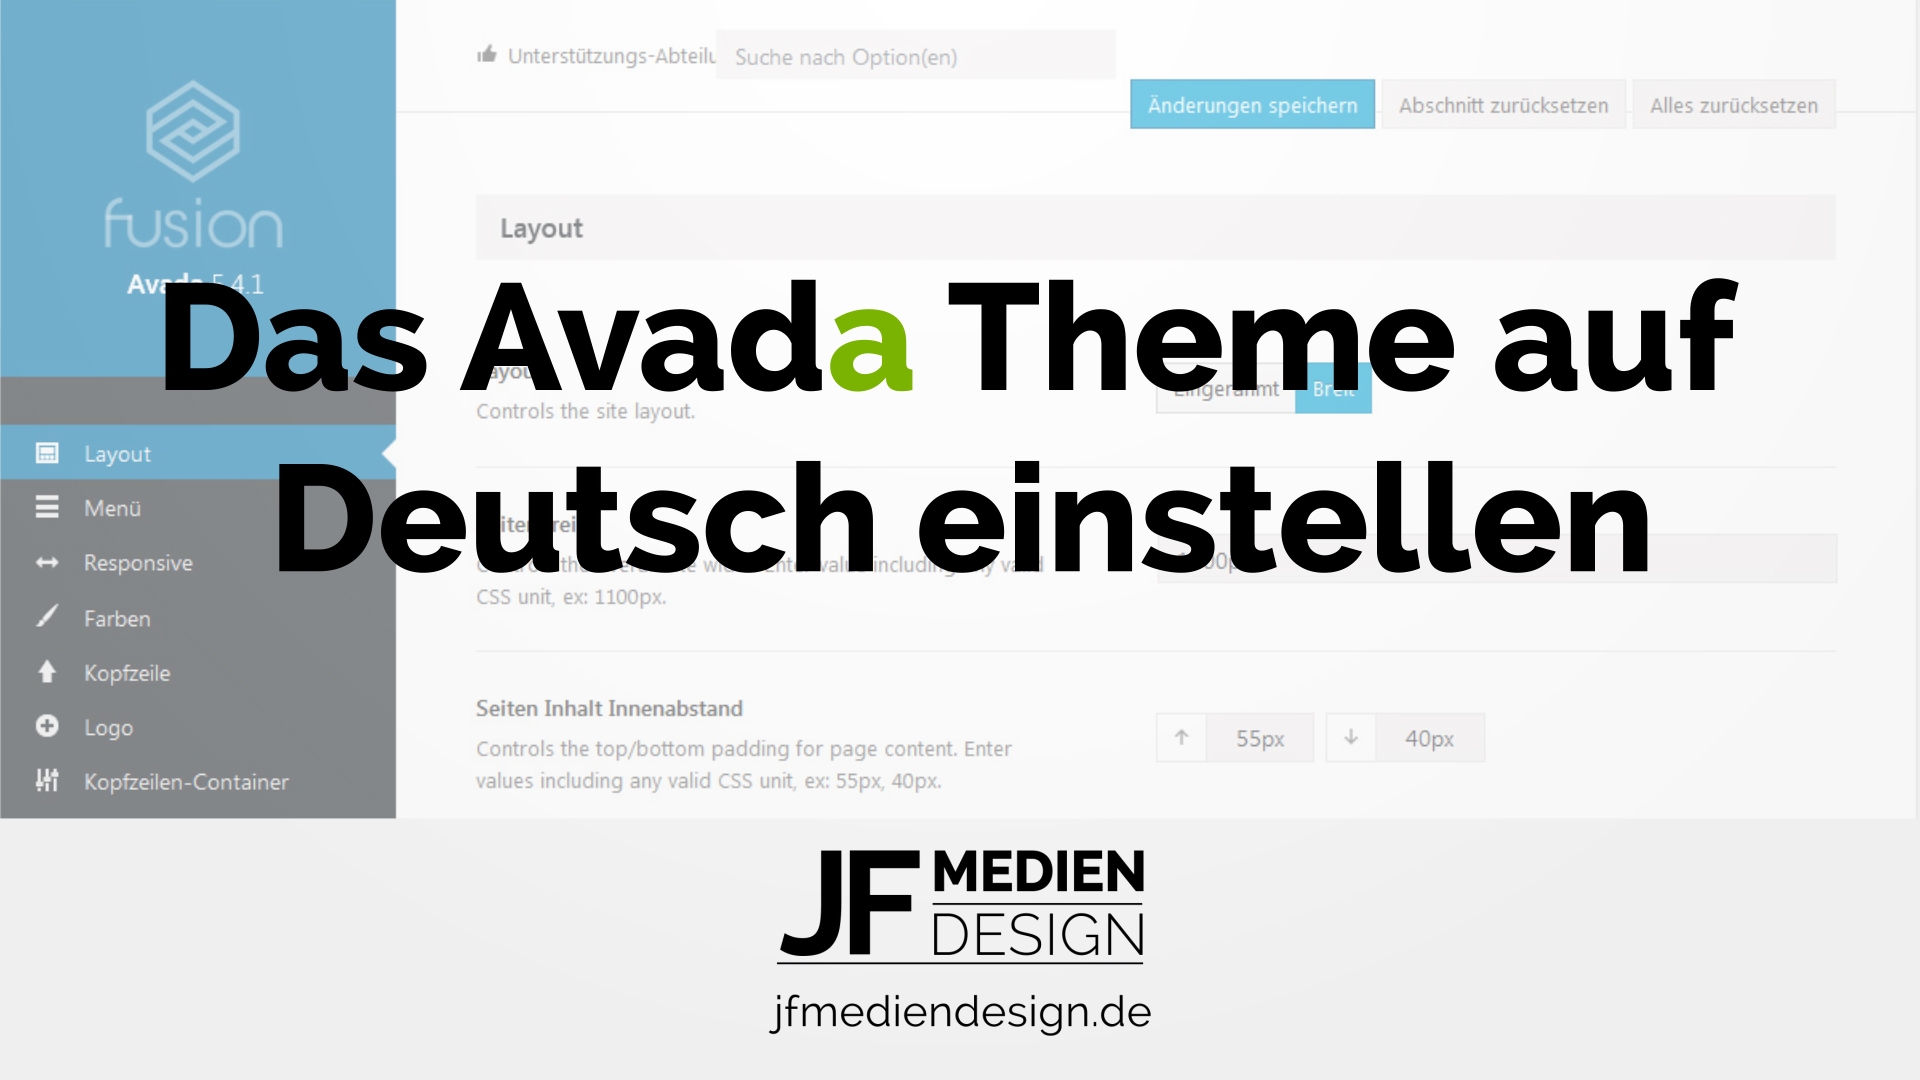 Das Avada Theme auf Deutsch einstellen